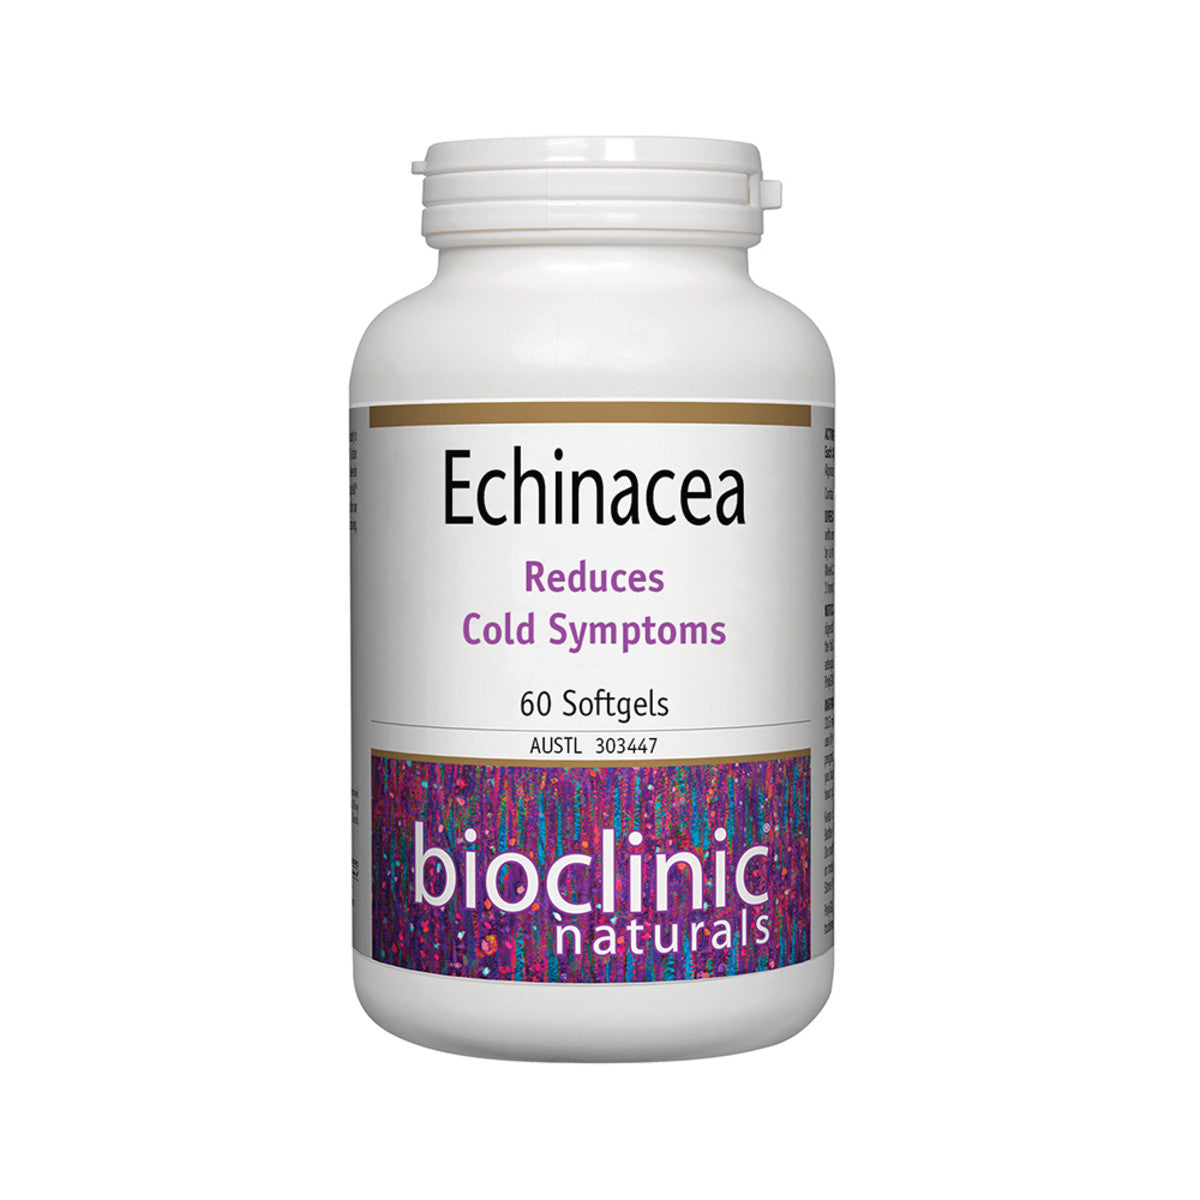 Bioclinic Naturals - Echinacea